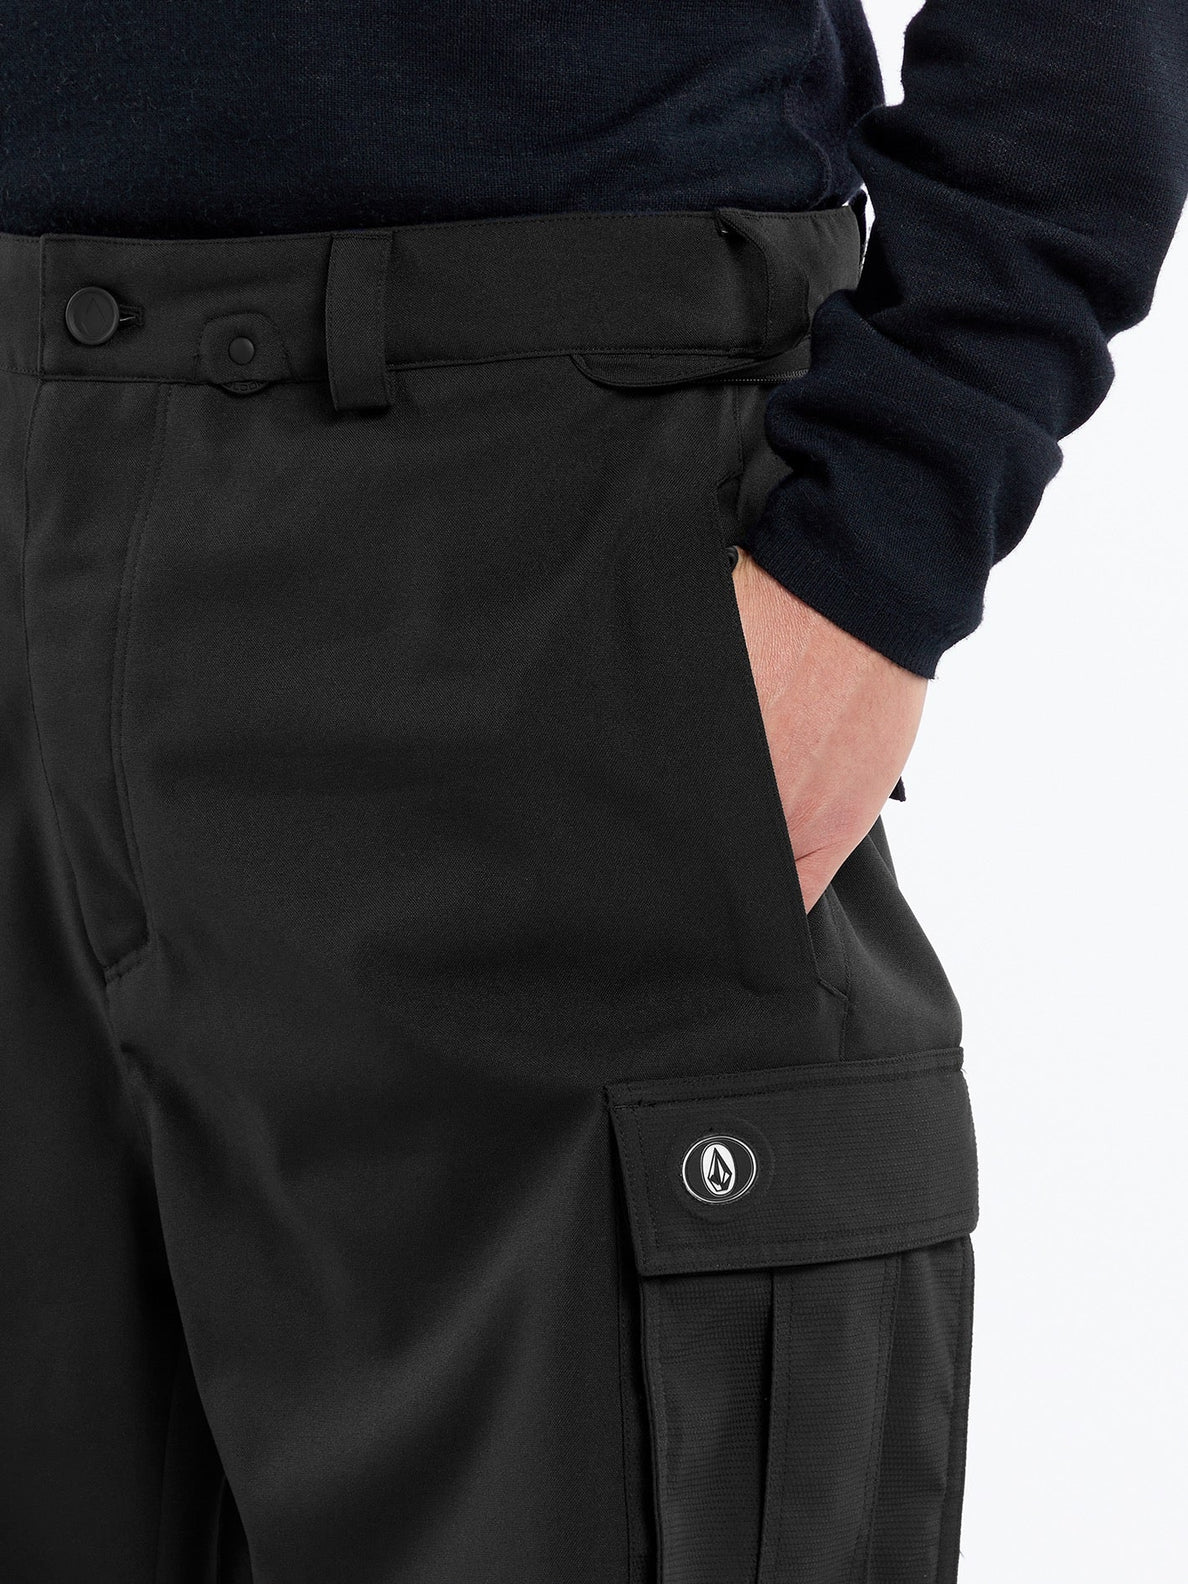 Nwrk Baggy Trousers - BLACK (G1352409_BLK) [33]